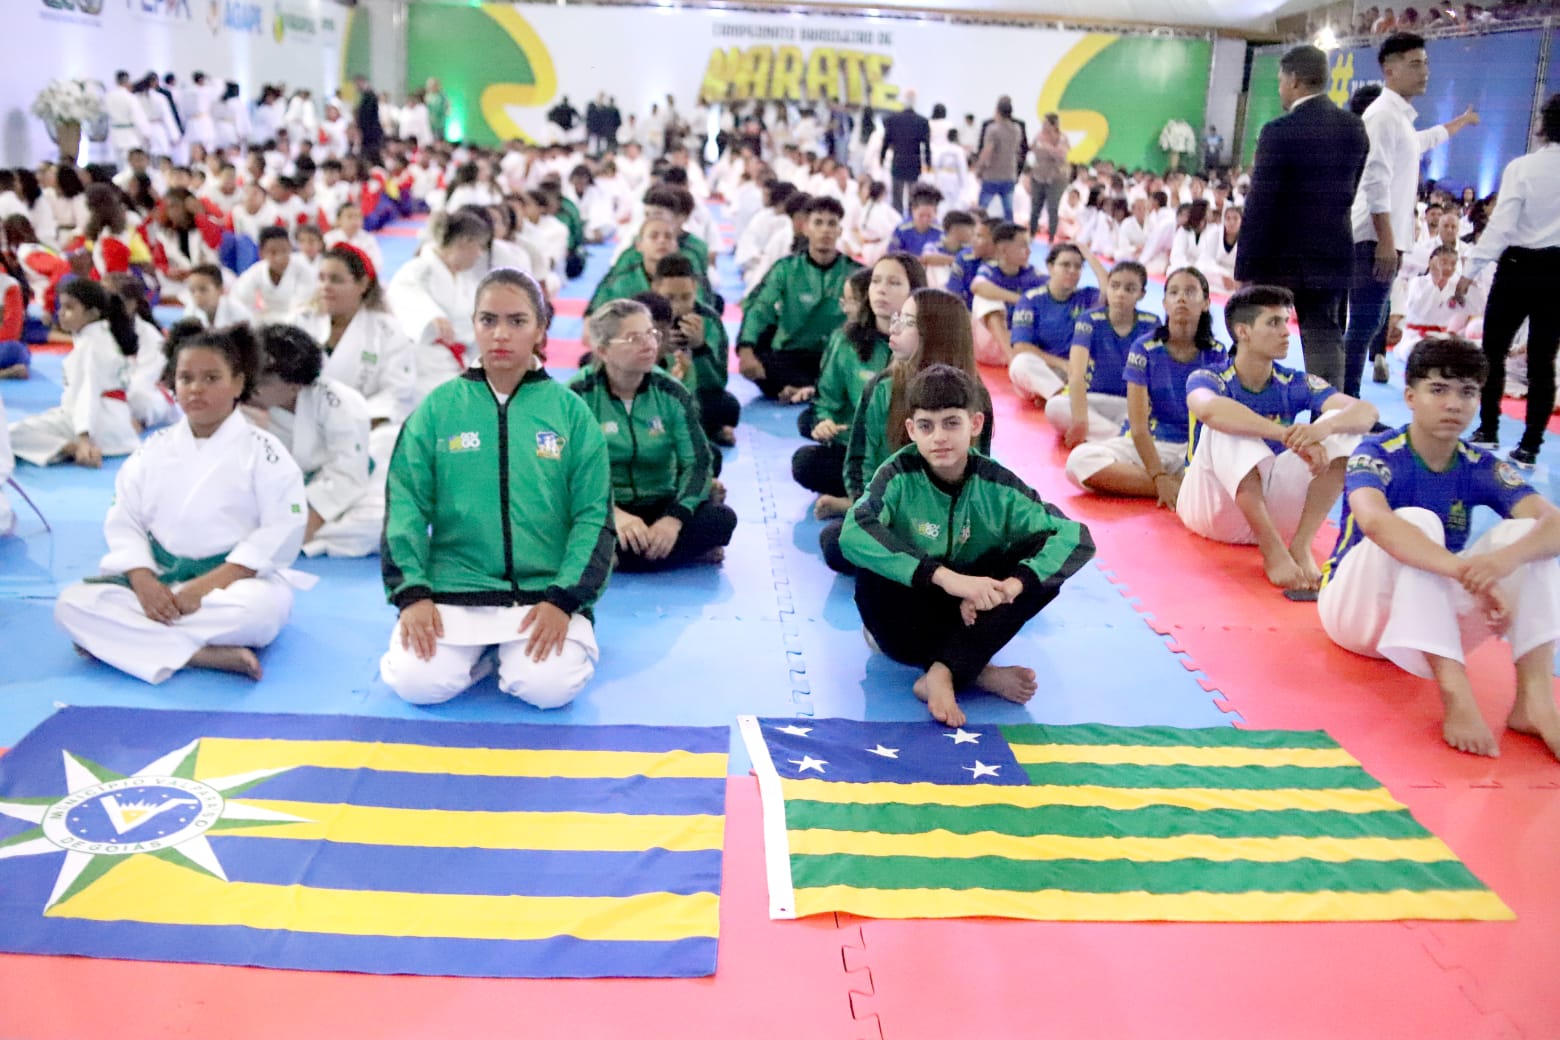 Campeonato Brasileiro de Karatê: Parauapebas recebe delegações de todo o país.